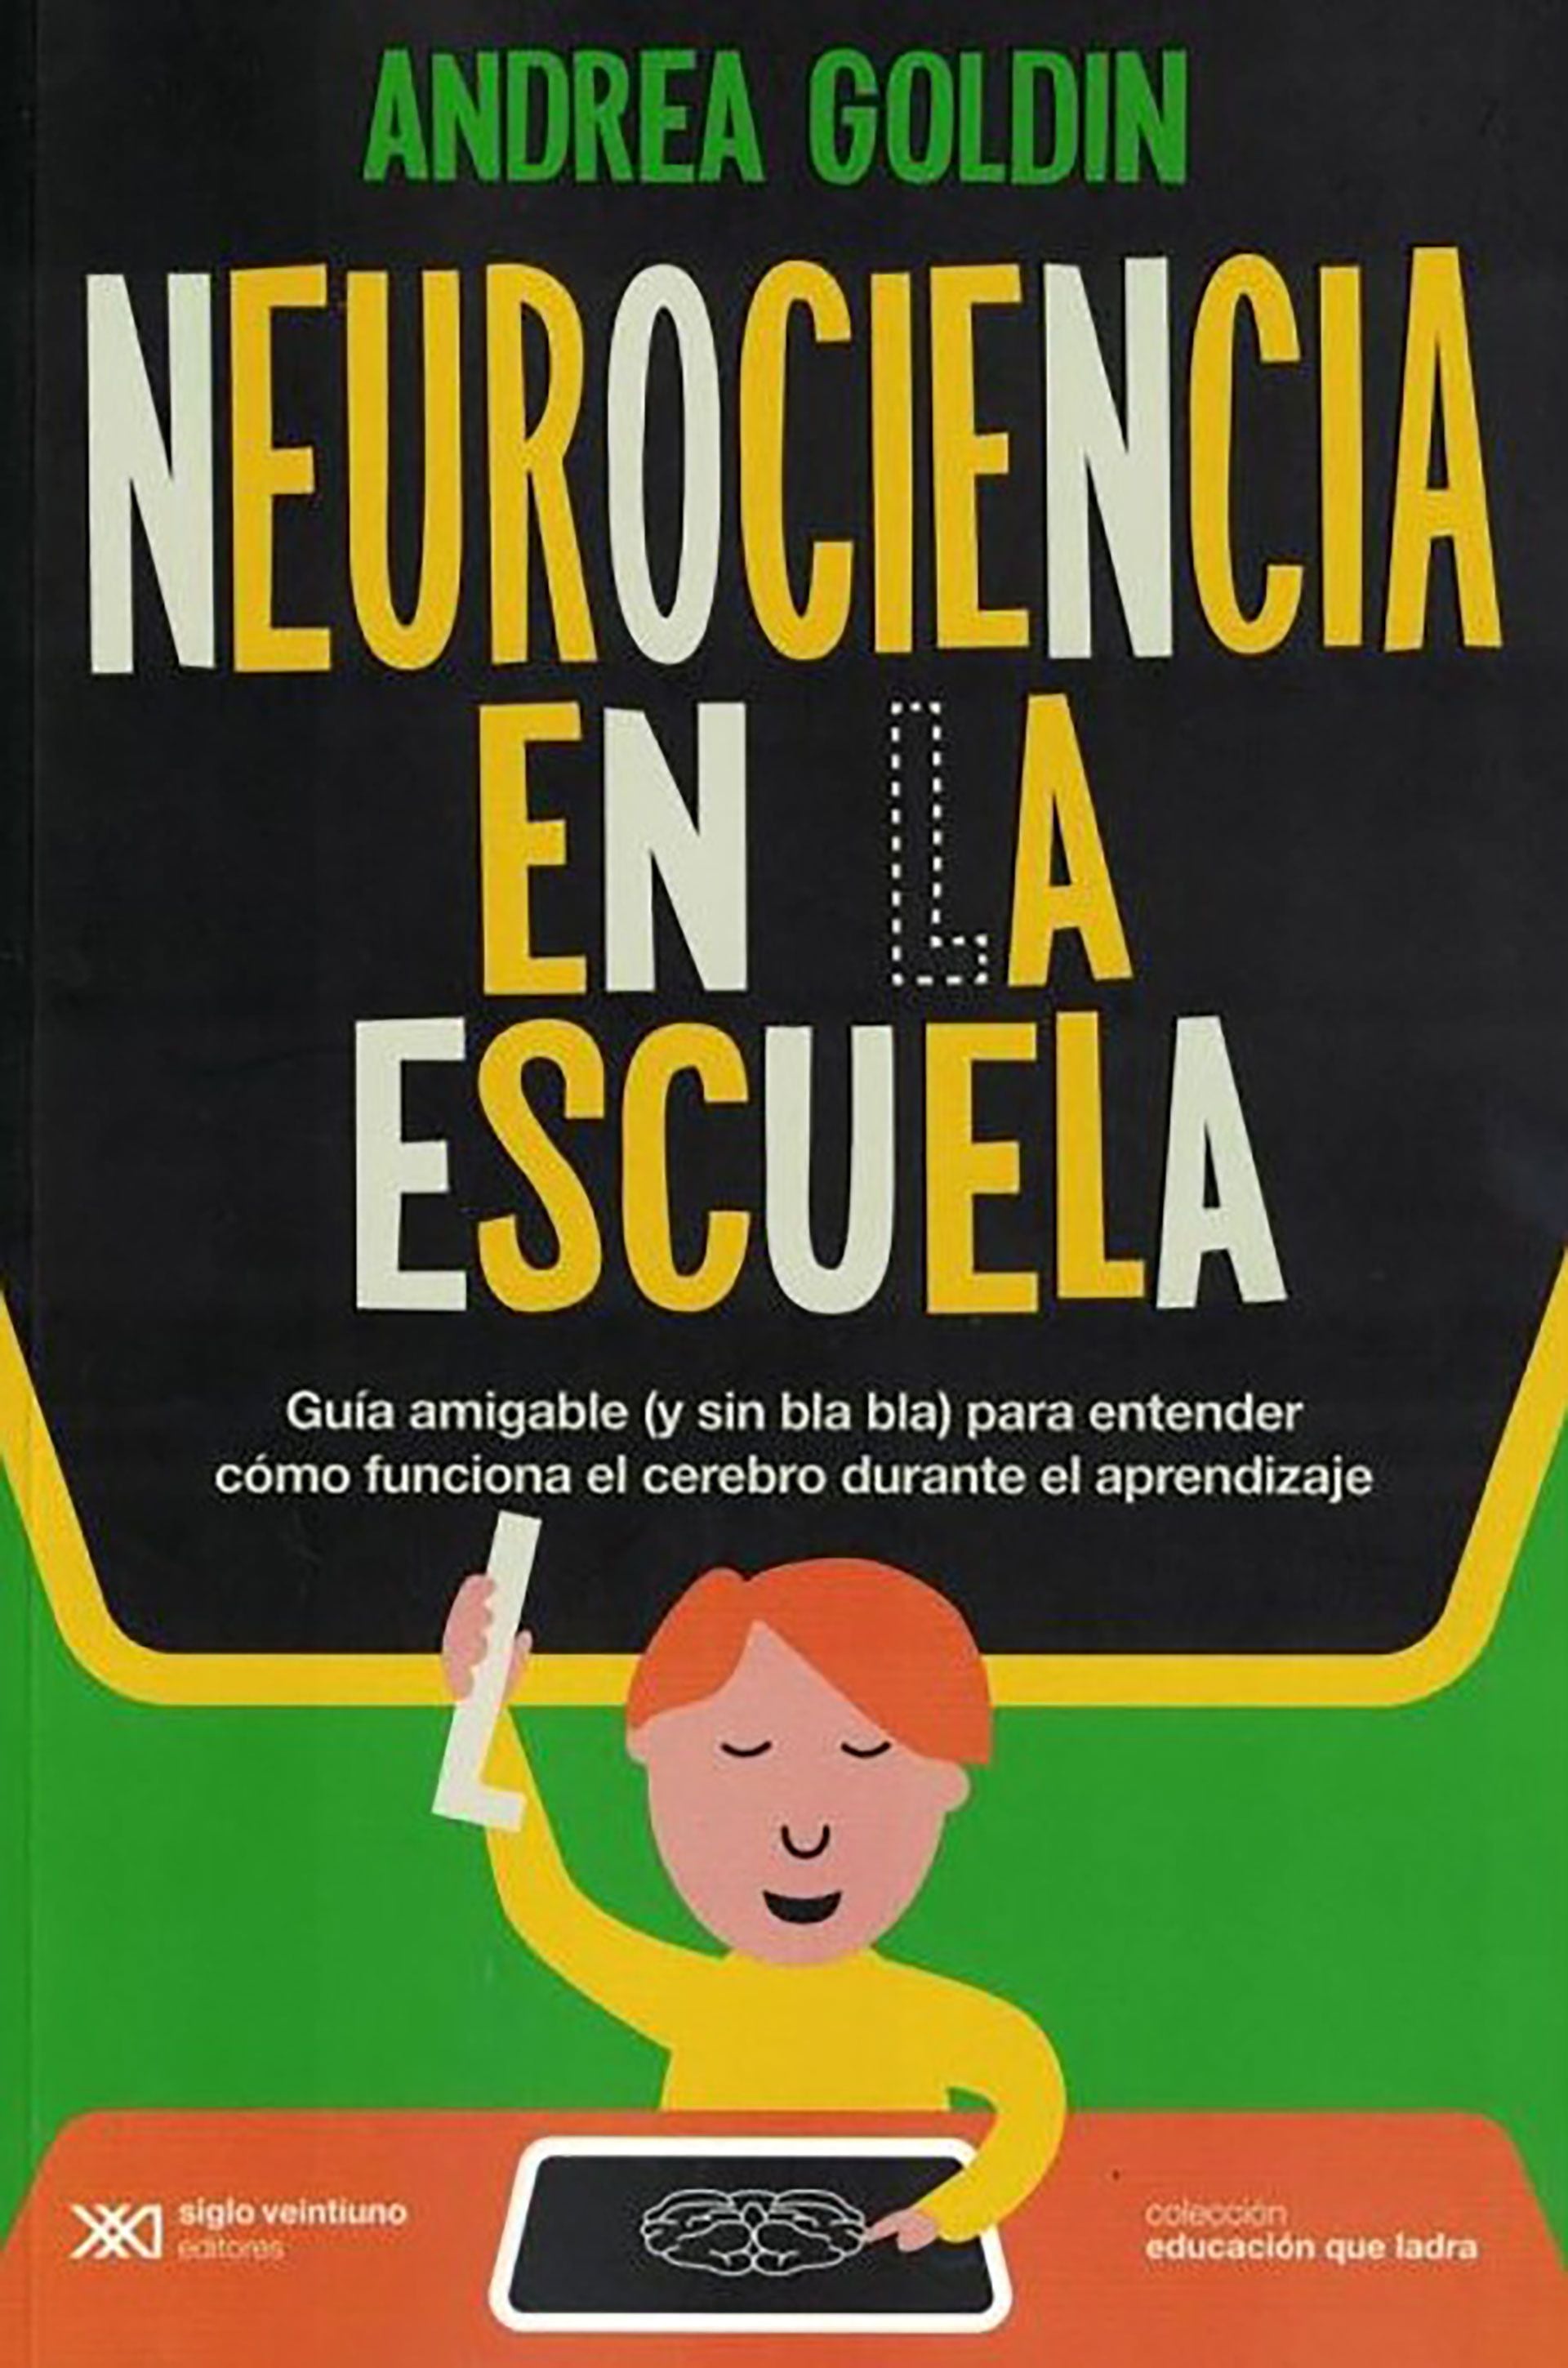 "Neurociencia en la escuela", de Andrea Goldin